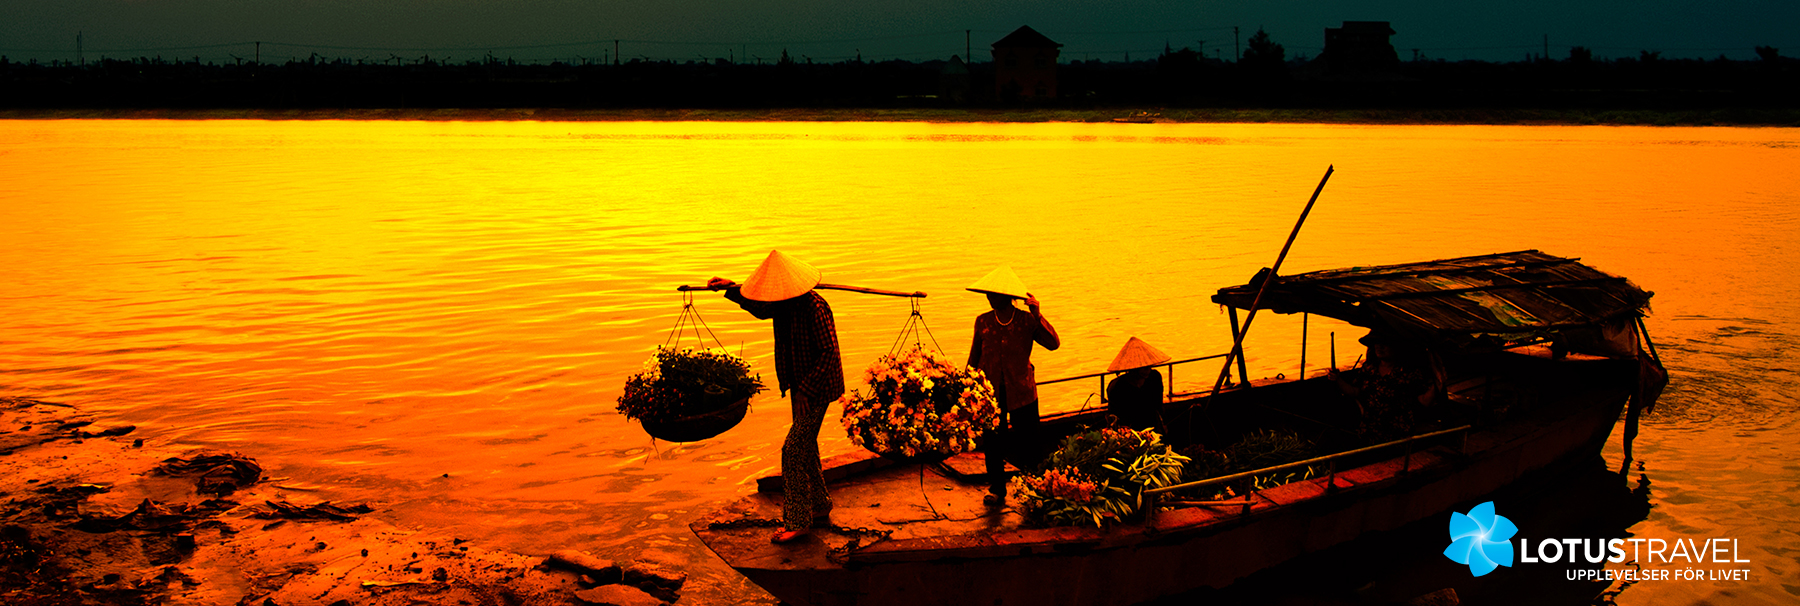 2 000 kr rabatt på gruppresan Fyra länder längs Mekong